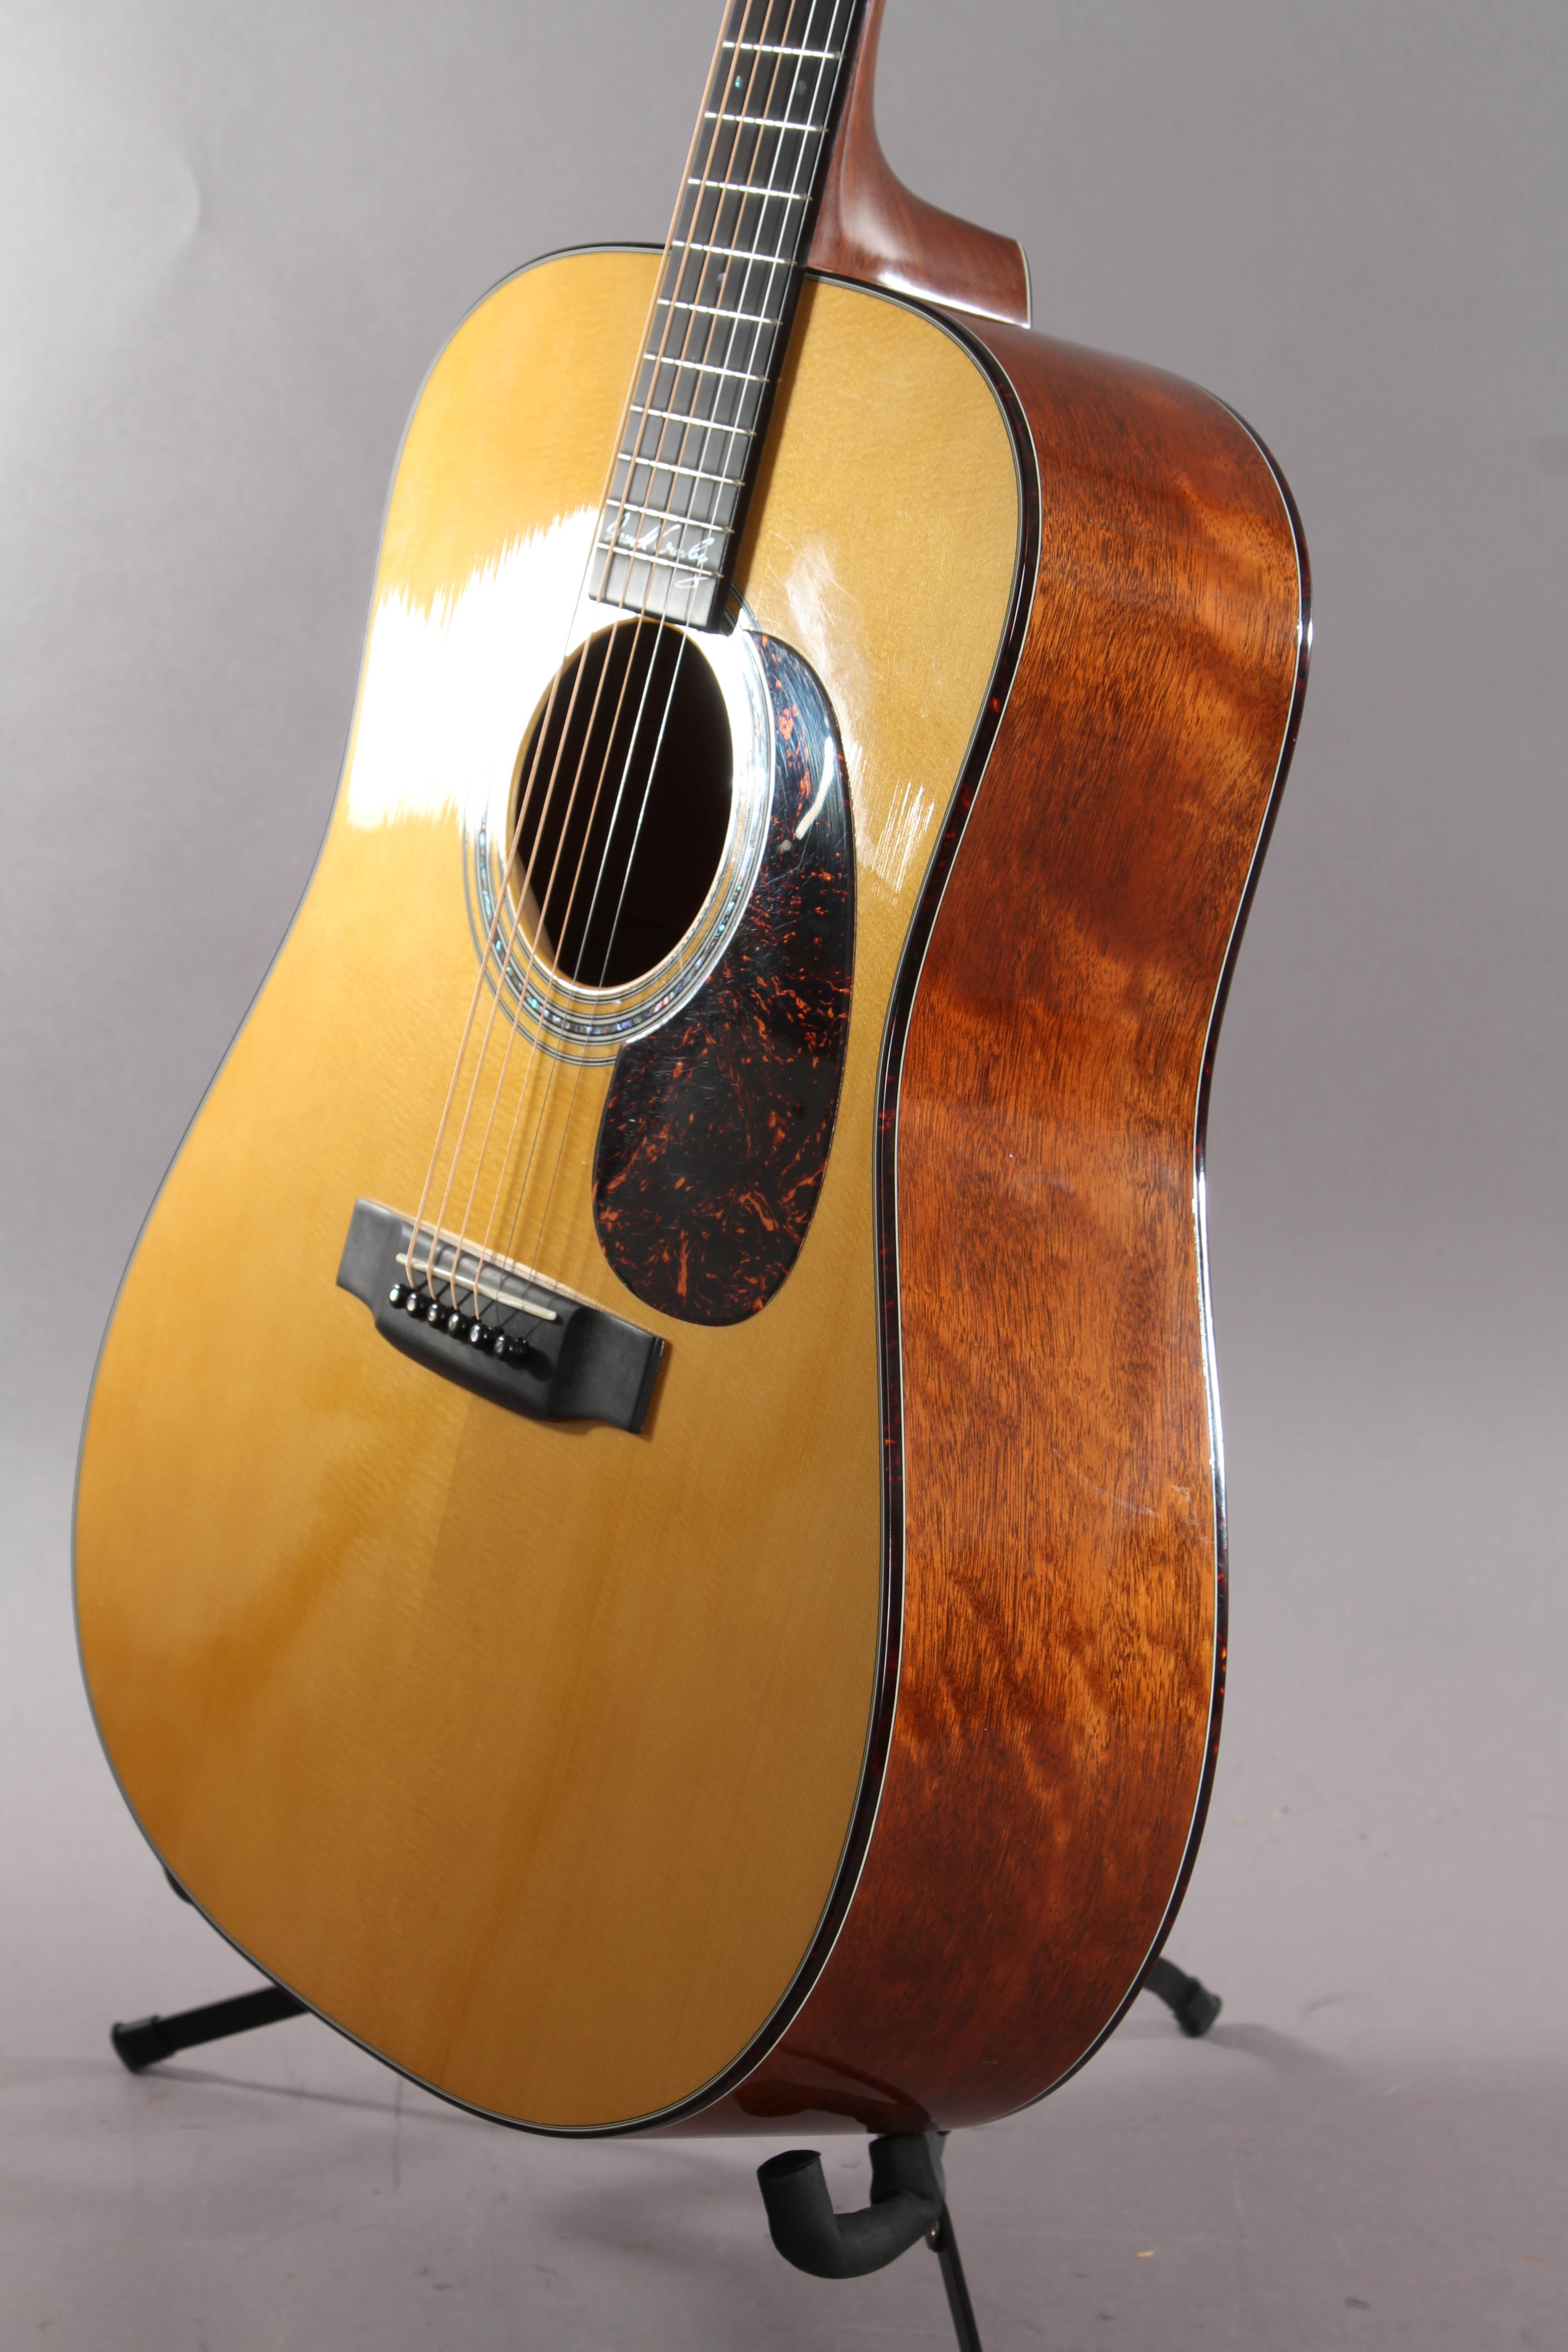 2002 Martin D-18 DC David Crosby Signature Acoustic Guitar #101 of